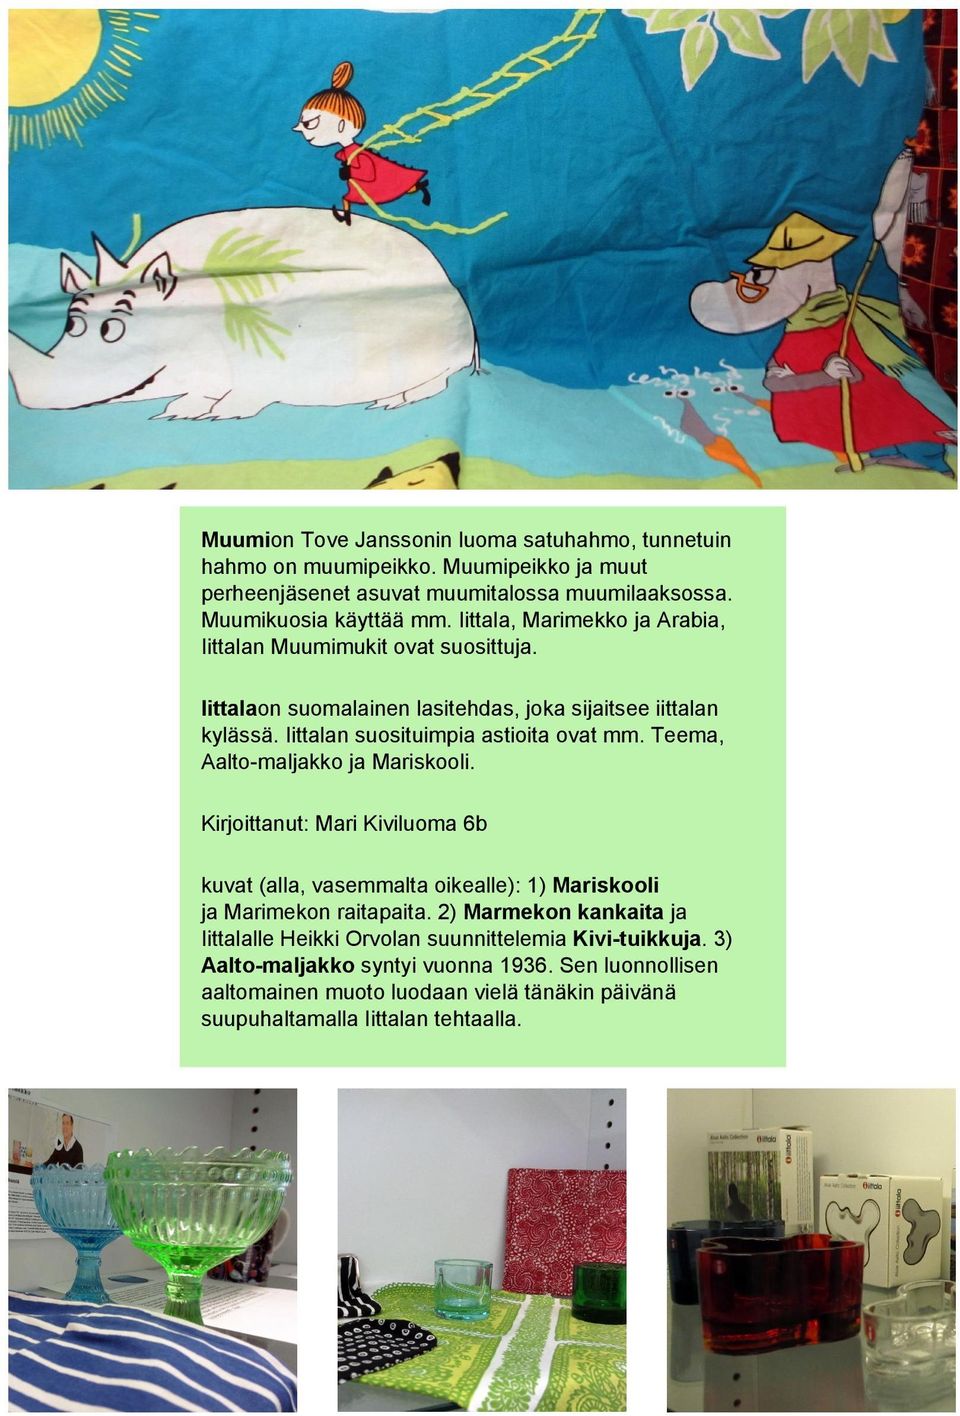 Teema, Aalto-maljakko ja Mariskooli. Kirjoittanut: Mari Kiviluoma 6b kuvat (alla, vasemmalta oikealle): 1) Mariskooli jamarimekon raitapaita.